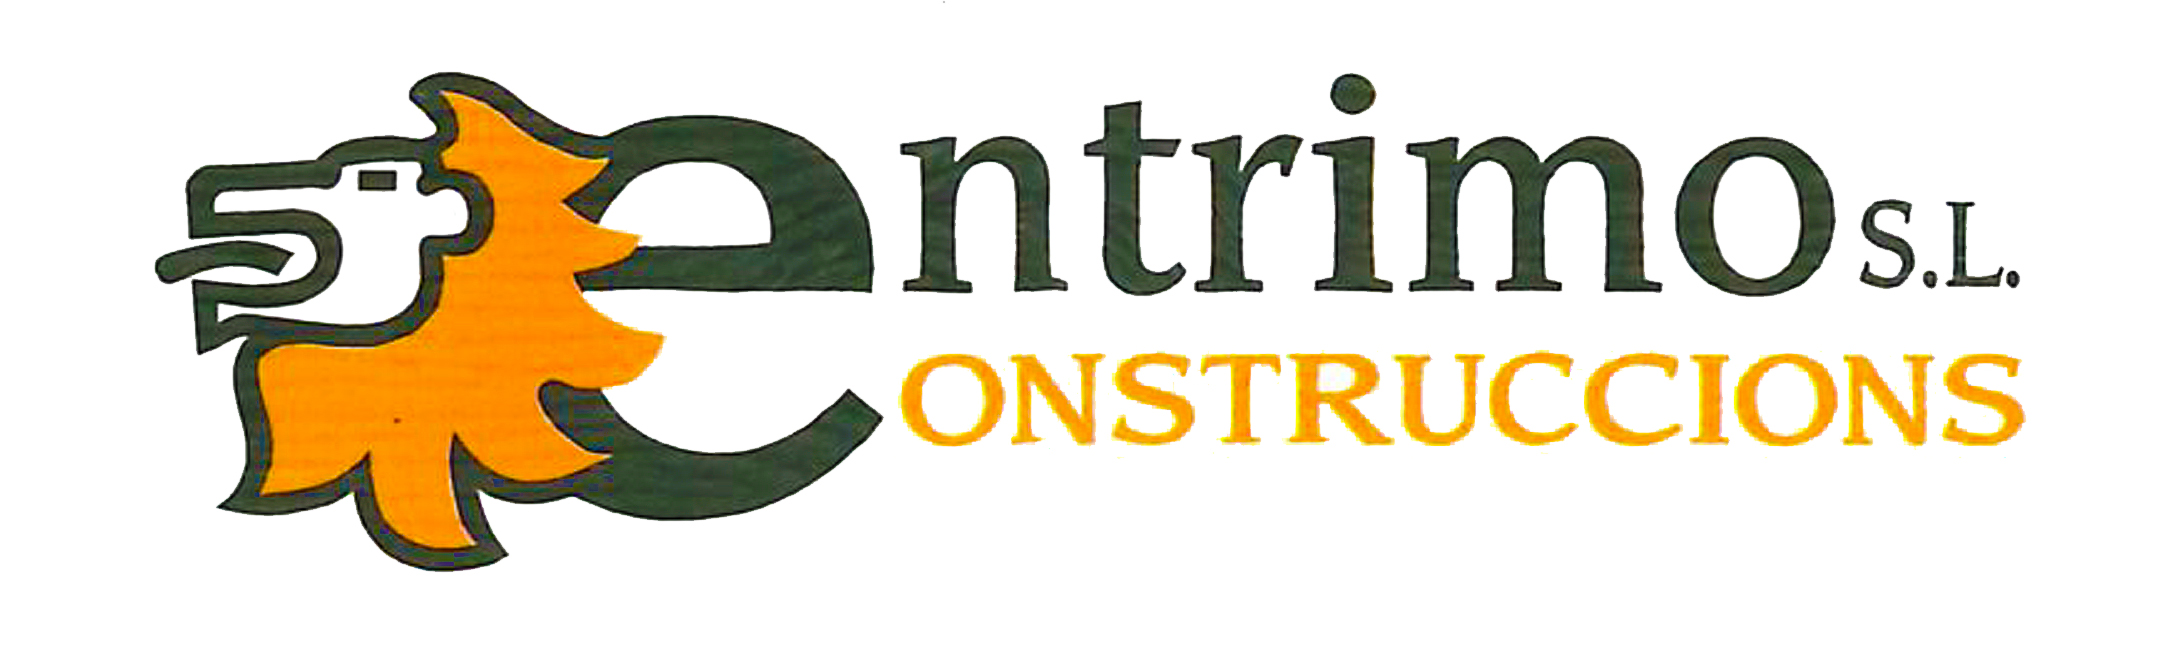 Logo Centrimo